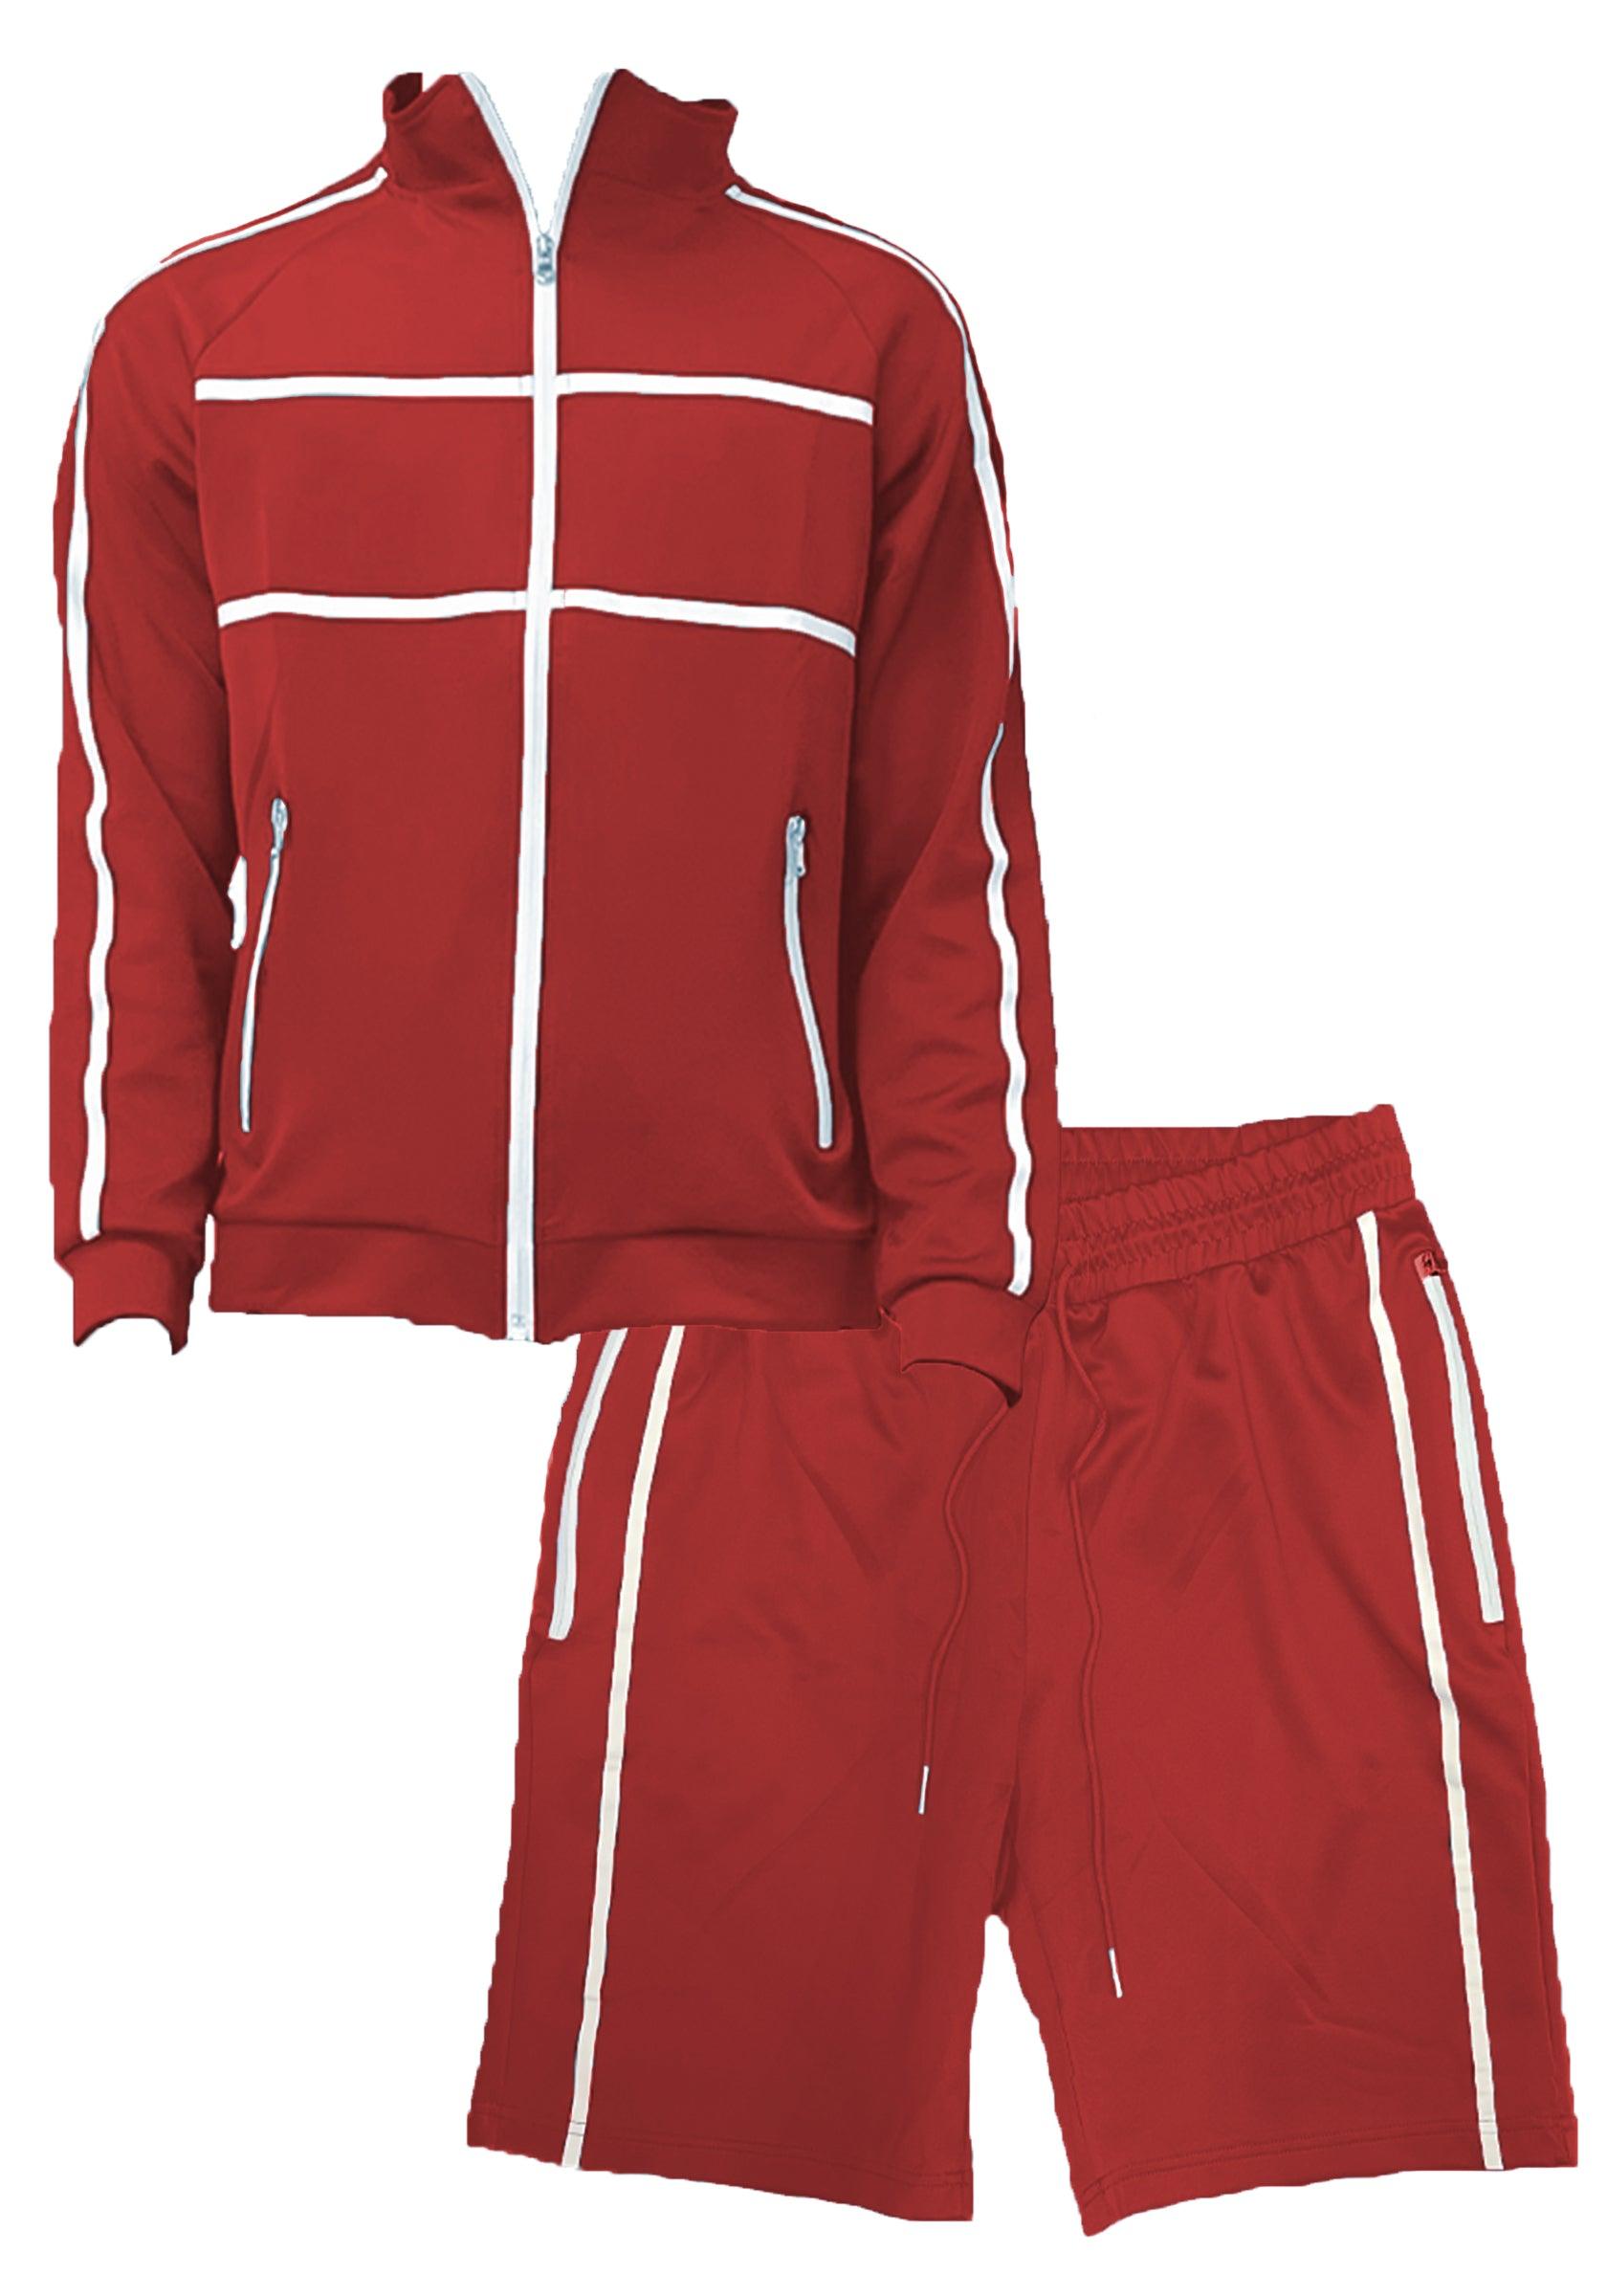 Men's 2PC Track Sets Red Jordan Track Jacket Short Set